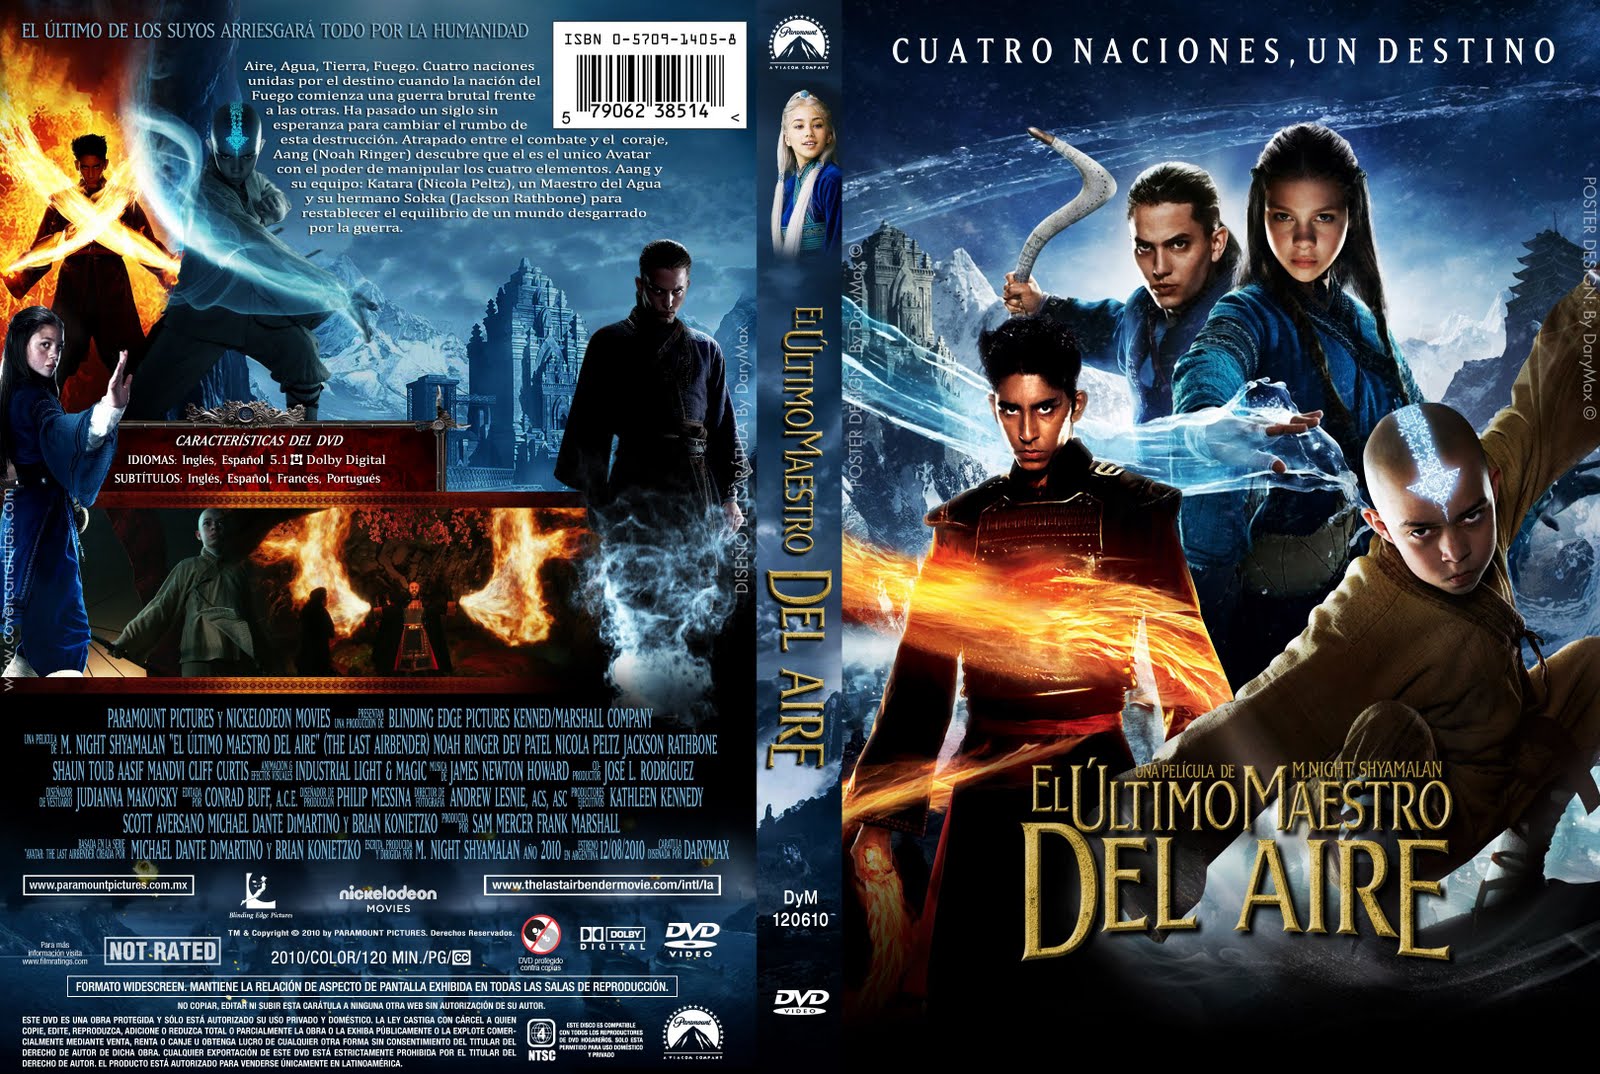 Caratulas DVD peliculas 2010 [Parte 2] - TV, películas ...